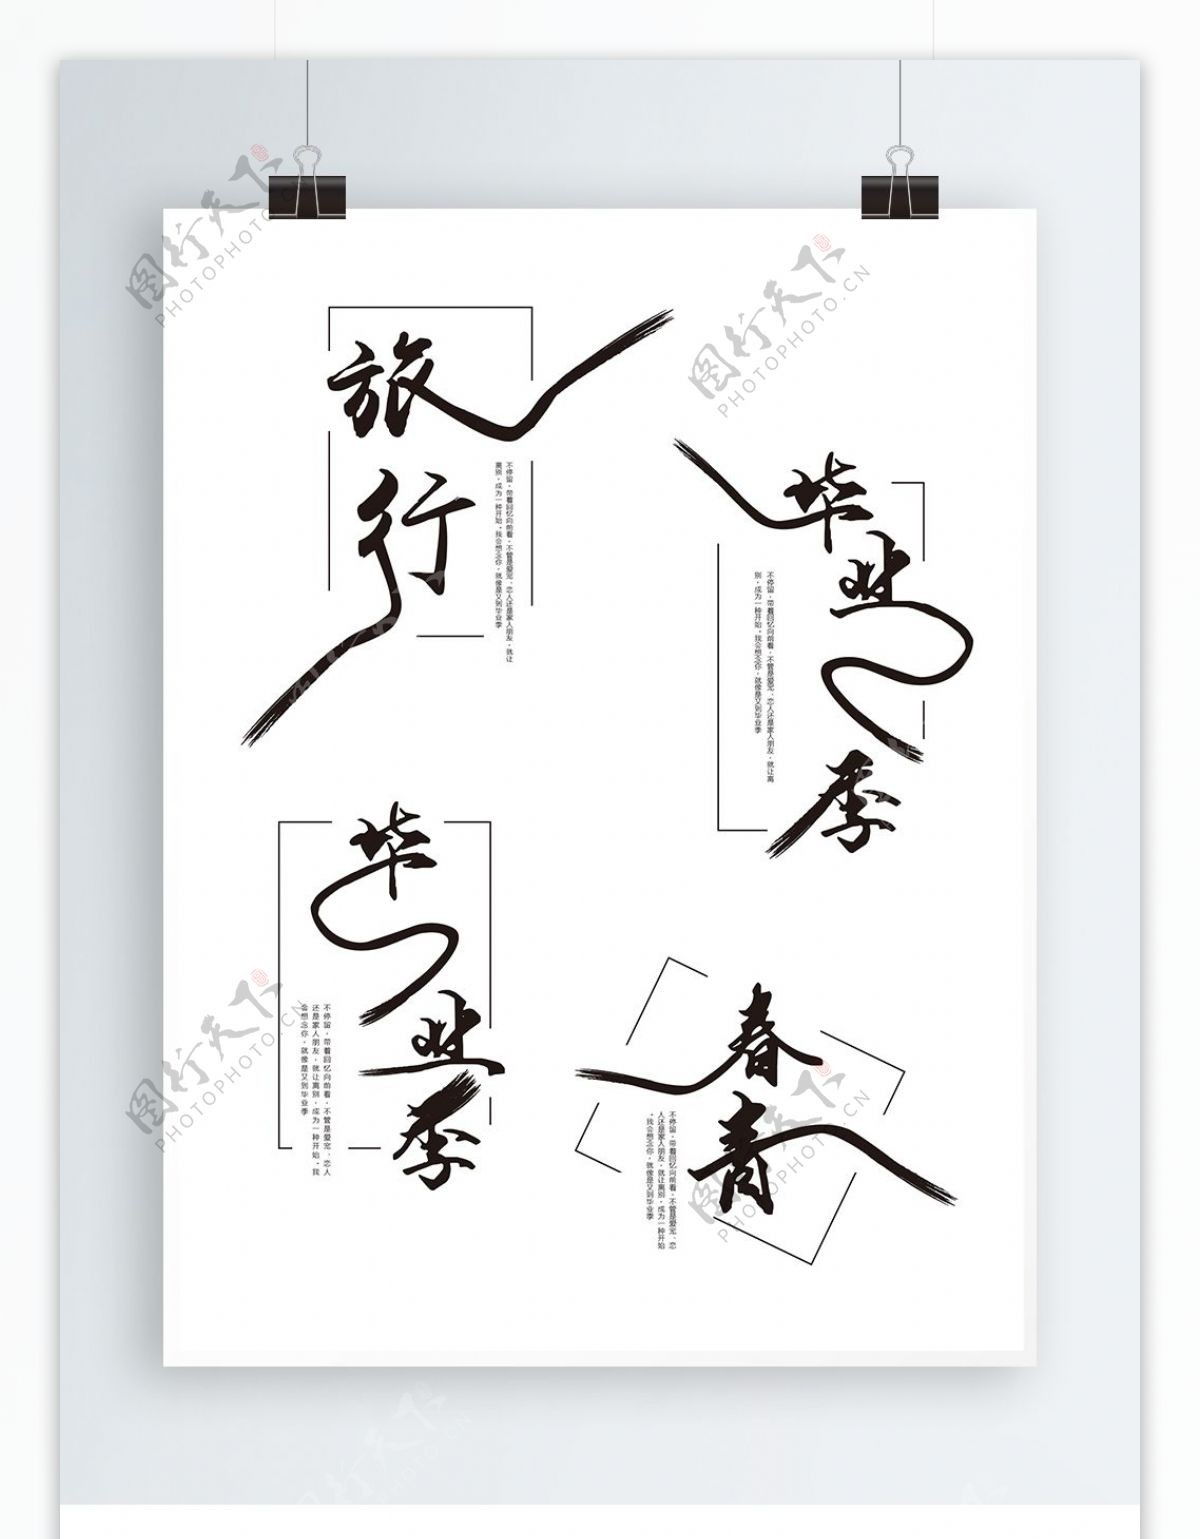 原创中国风毕业季艺术字体设计